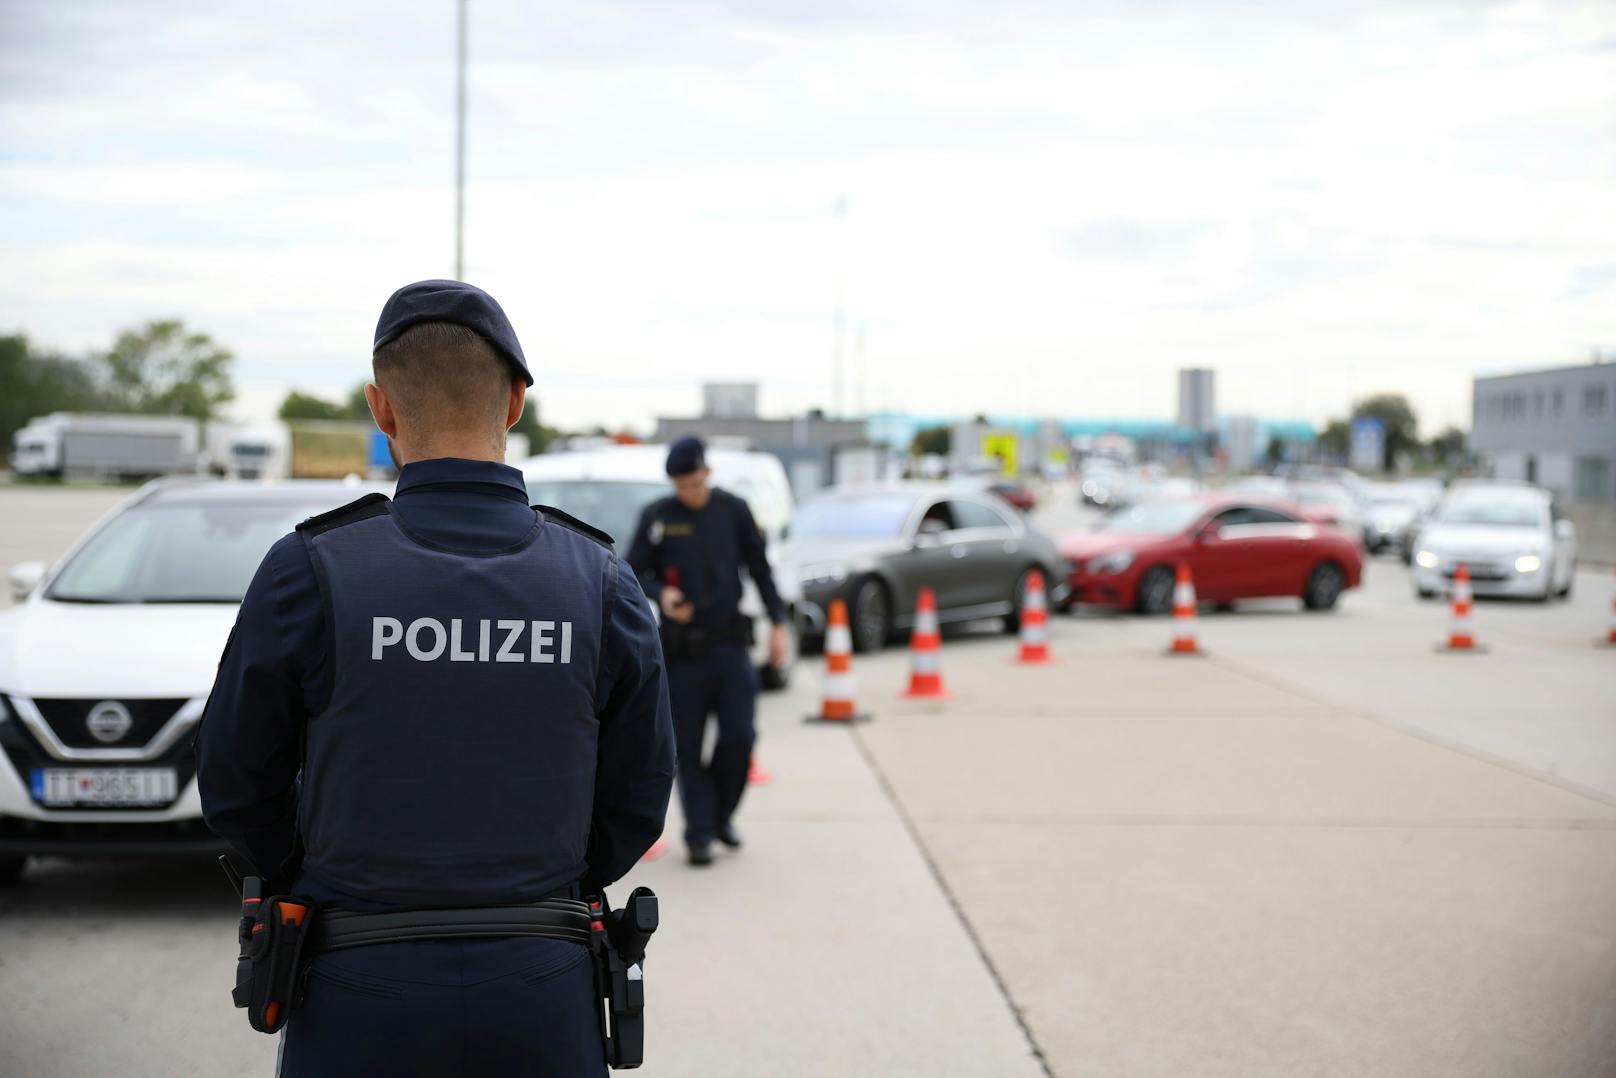 Schlepper durchbricht Grenze, Polizei nimmt Verfolgung auf